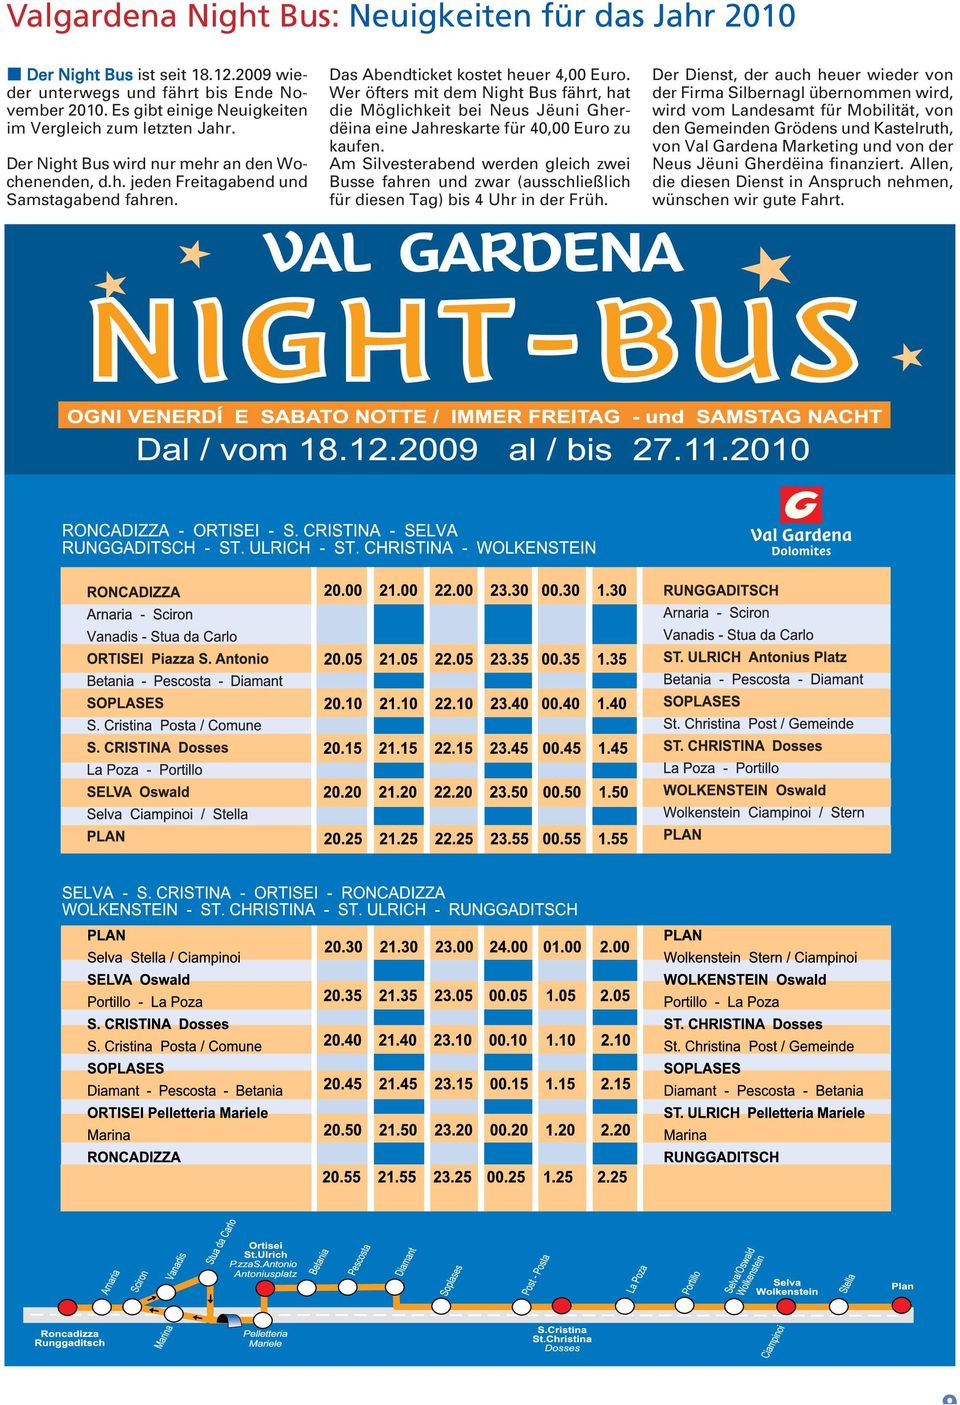 Wer öfters mit dem Night Bus fährt, hat die Möglichkeit bei Neus Jëuni Gherdëina eine Jahreskarte für 40,00 Euro zu kaufen.